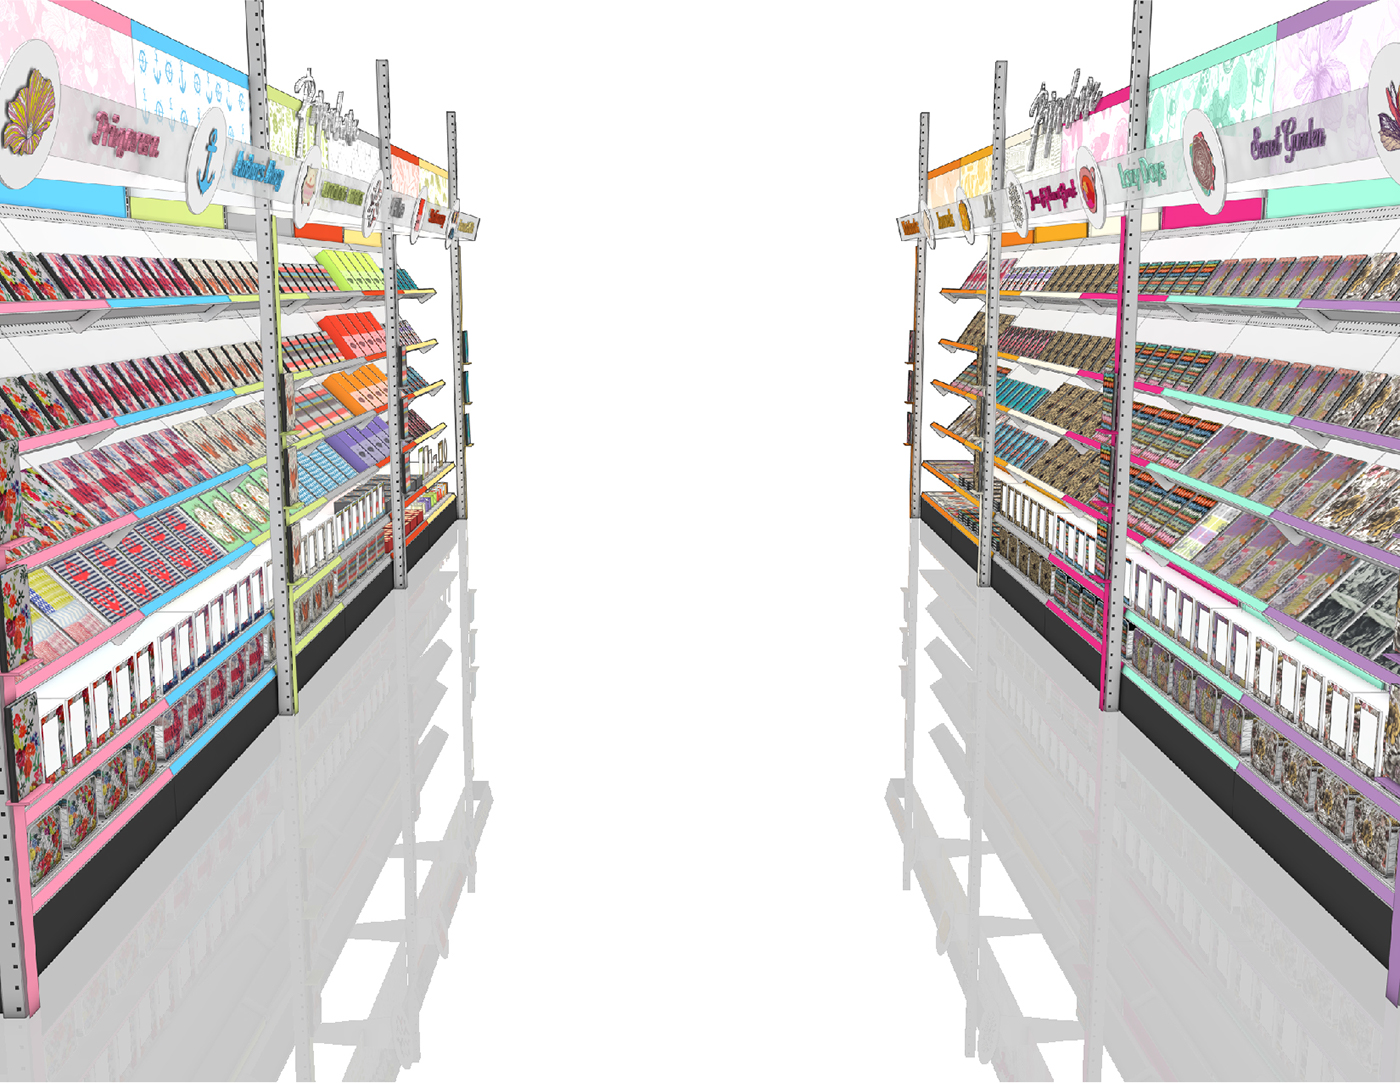 Display Retail design merchandising Fixtures posm pos store